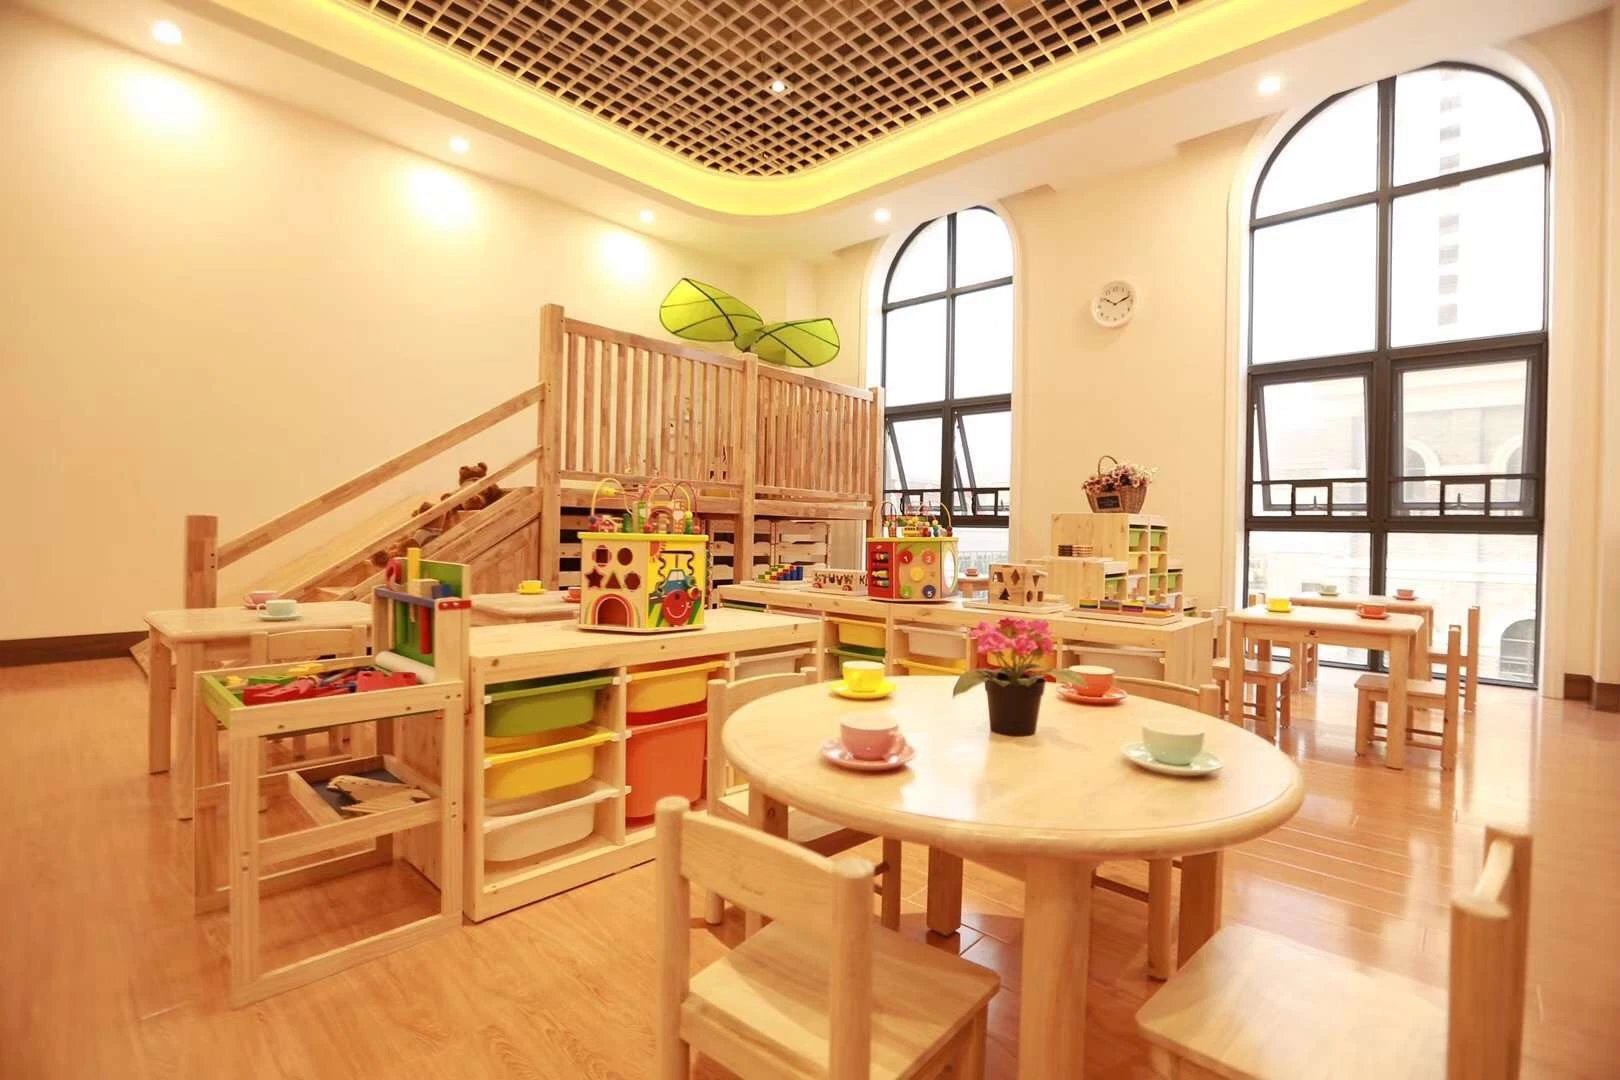 Китайской мебели для детей и детей мебель, школы для классных комнат детей мебелью, детский сад мебель поставщика